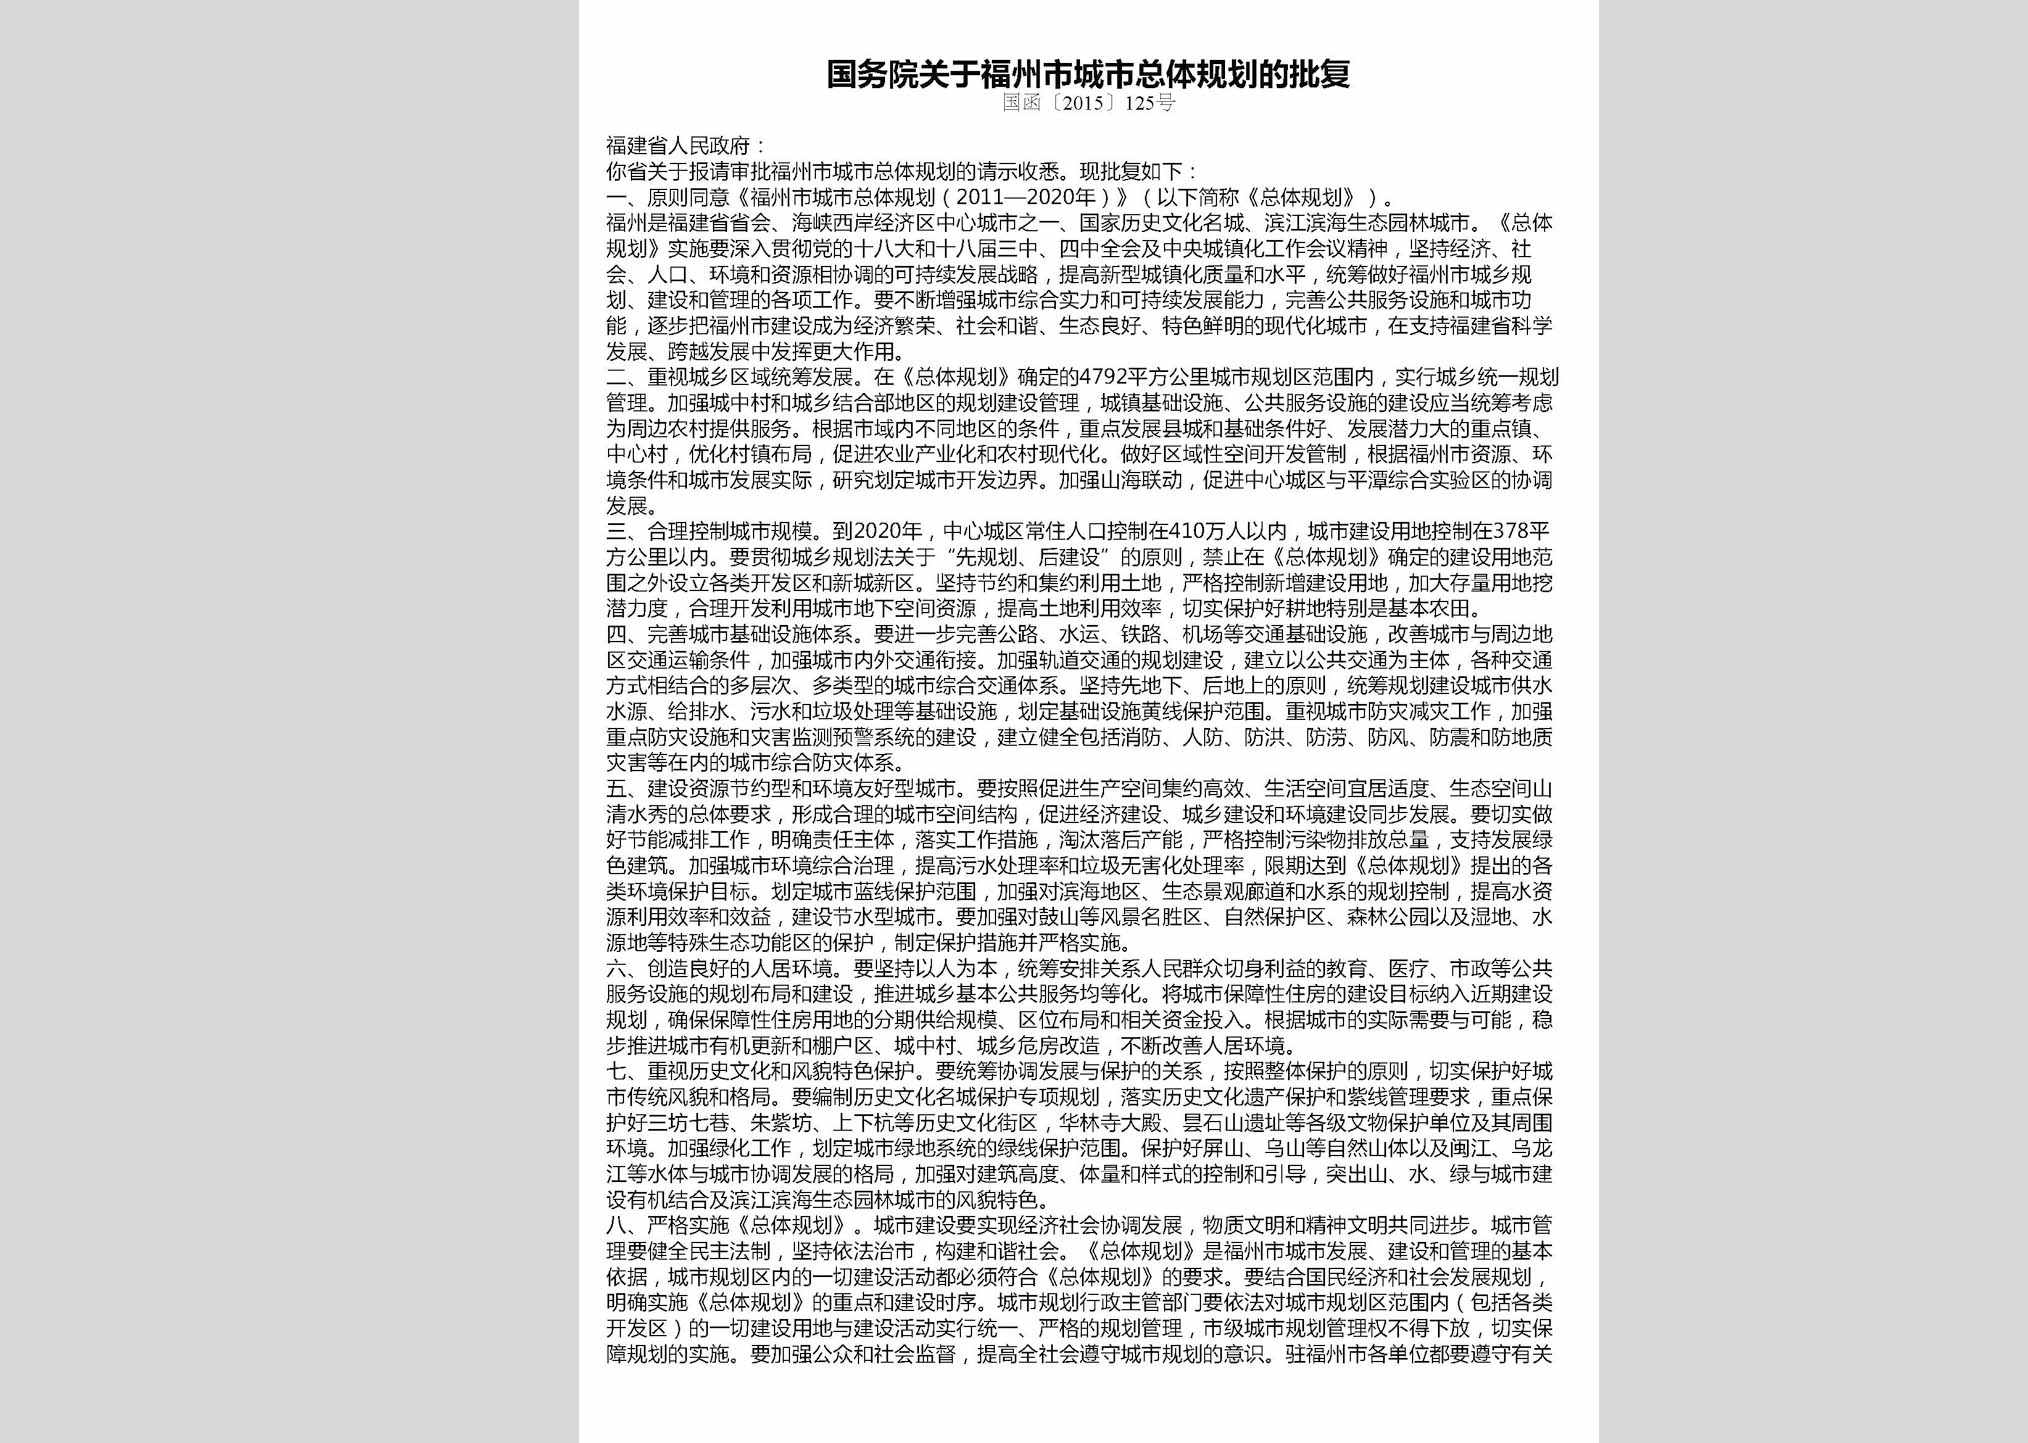 国函[2015]125号：国务院关于福州市城市总体规划的批复